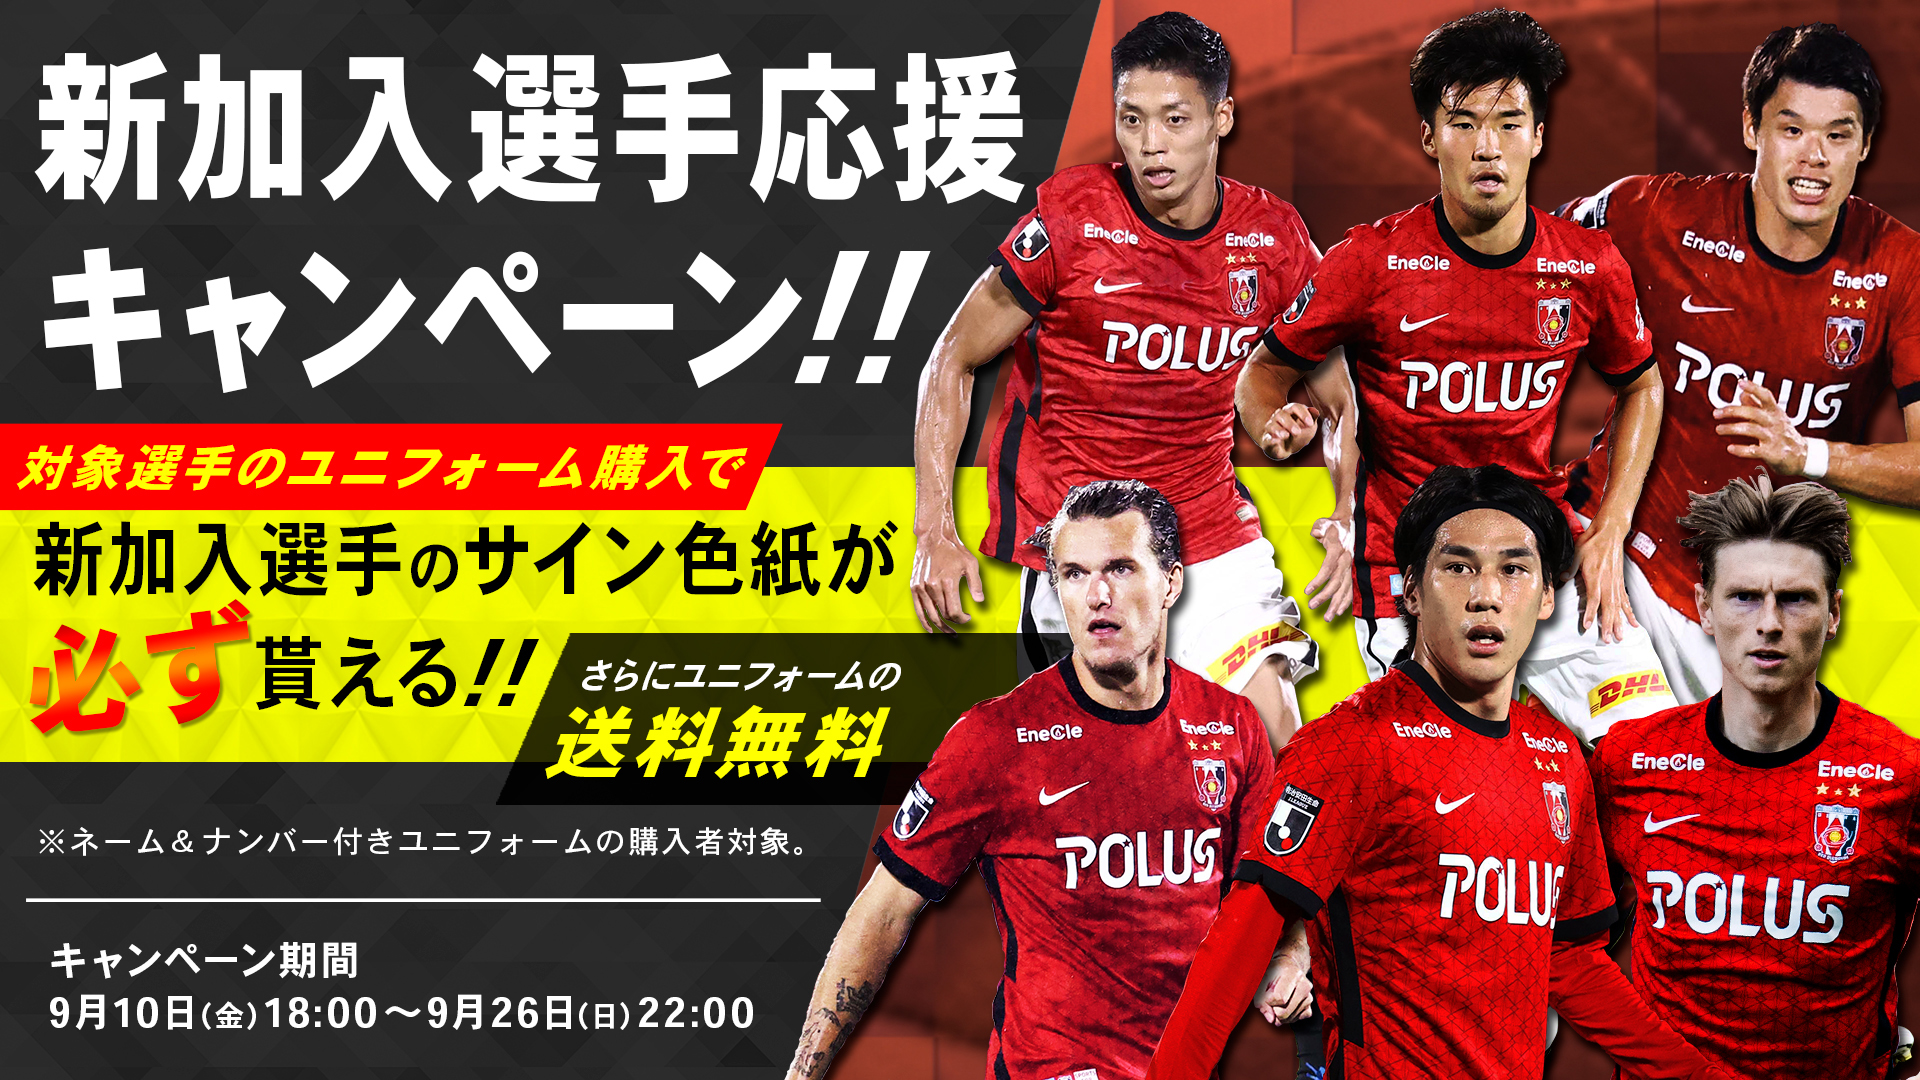 9 10 金 21ユニフォーム購入で選手のサインがもらえる 新加入選手応援キャンペーン 開始 Urawa Red Diamonds Official Website